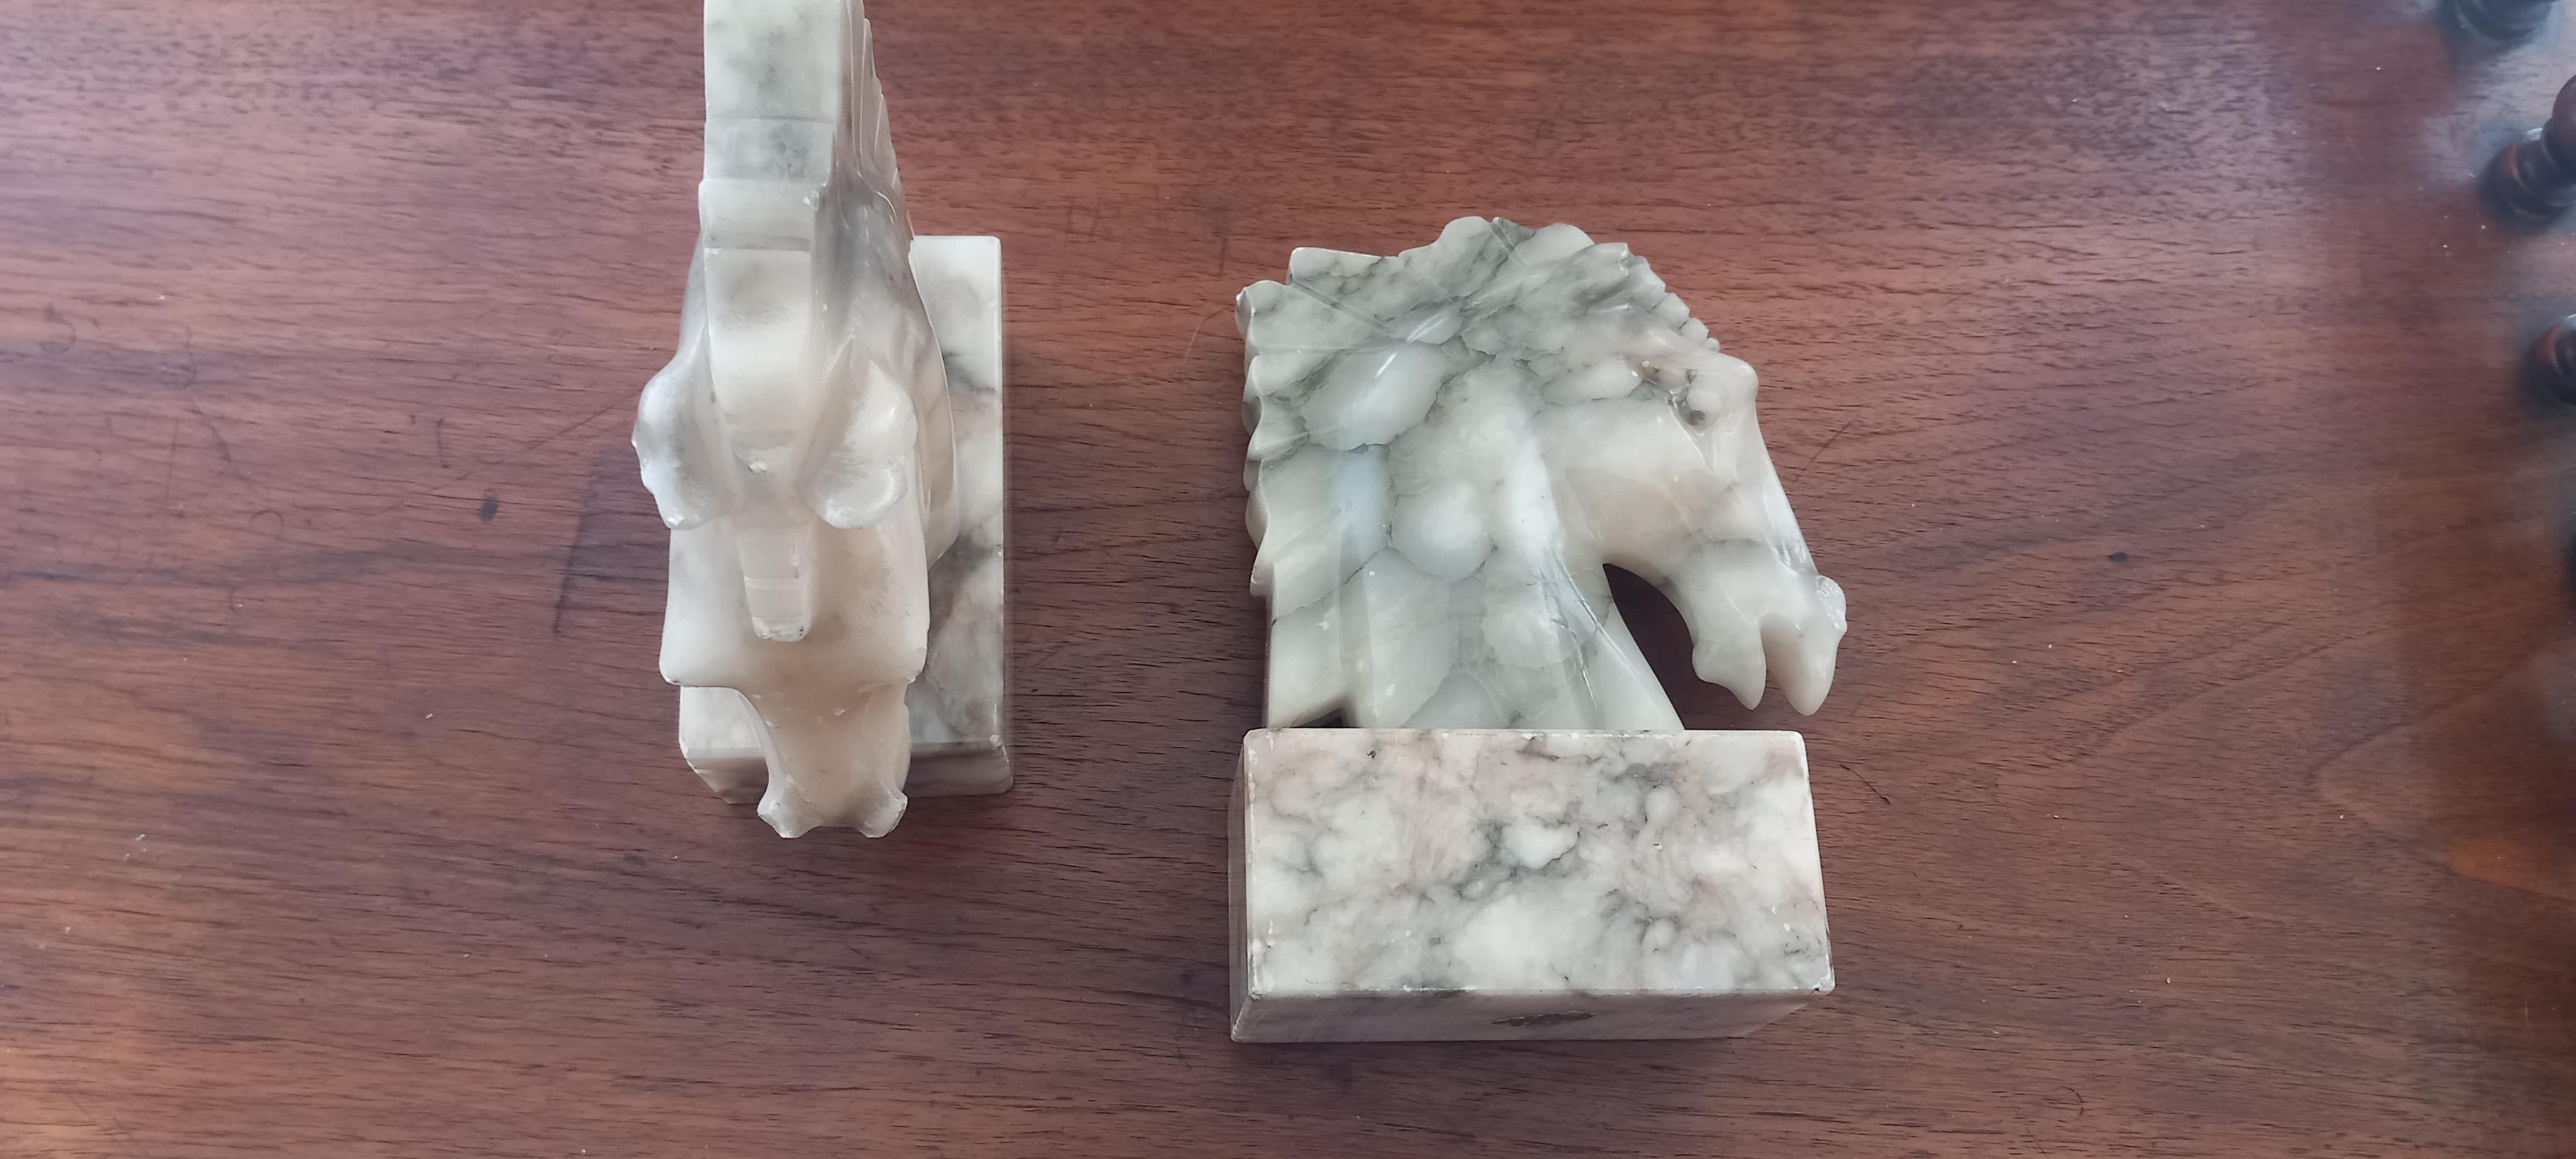 Serre-livres Art déco, Whiting, il s'agit de deux sculptures en forme de cheval, en marbre blanc/gris veiné

Ce sont des pièces fonctionnelles très décoratives et en même temps très belles.

Vestiges des ateliers qui existaient en Espagne et en